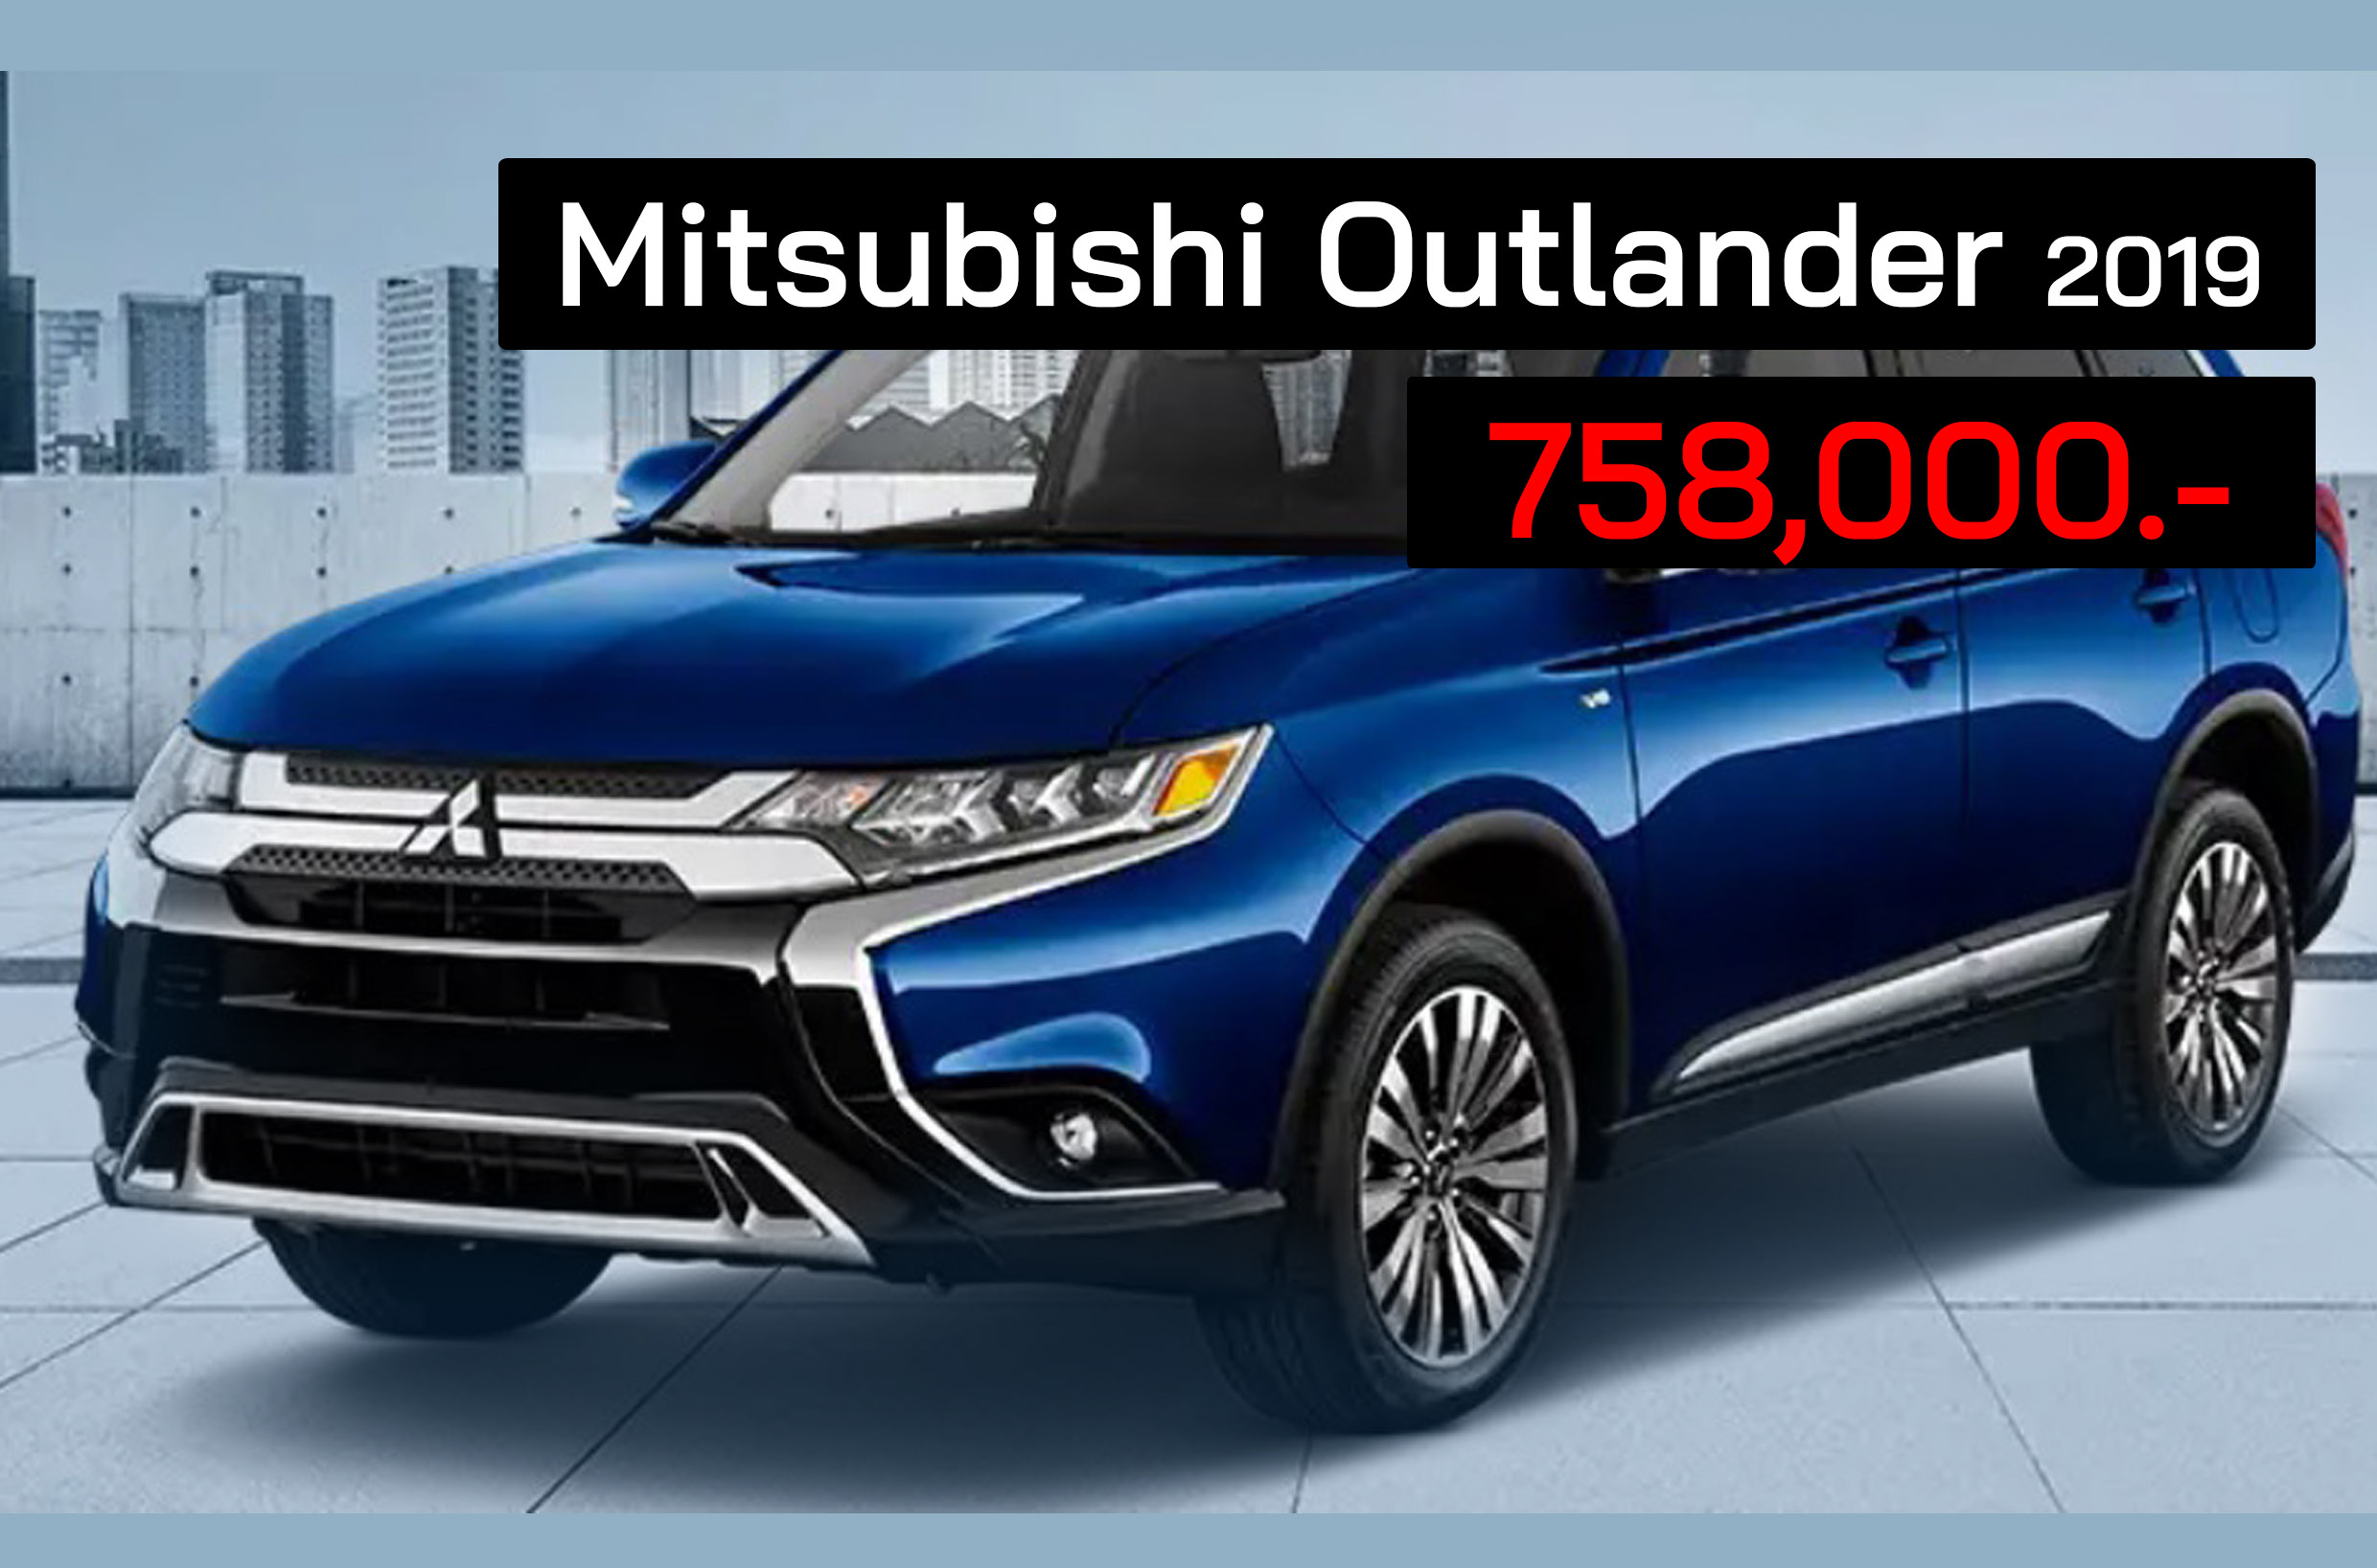 Mitsubishi Outlander 2019 ราคา 758,000 บาท ในสหรัฐฯ